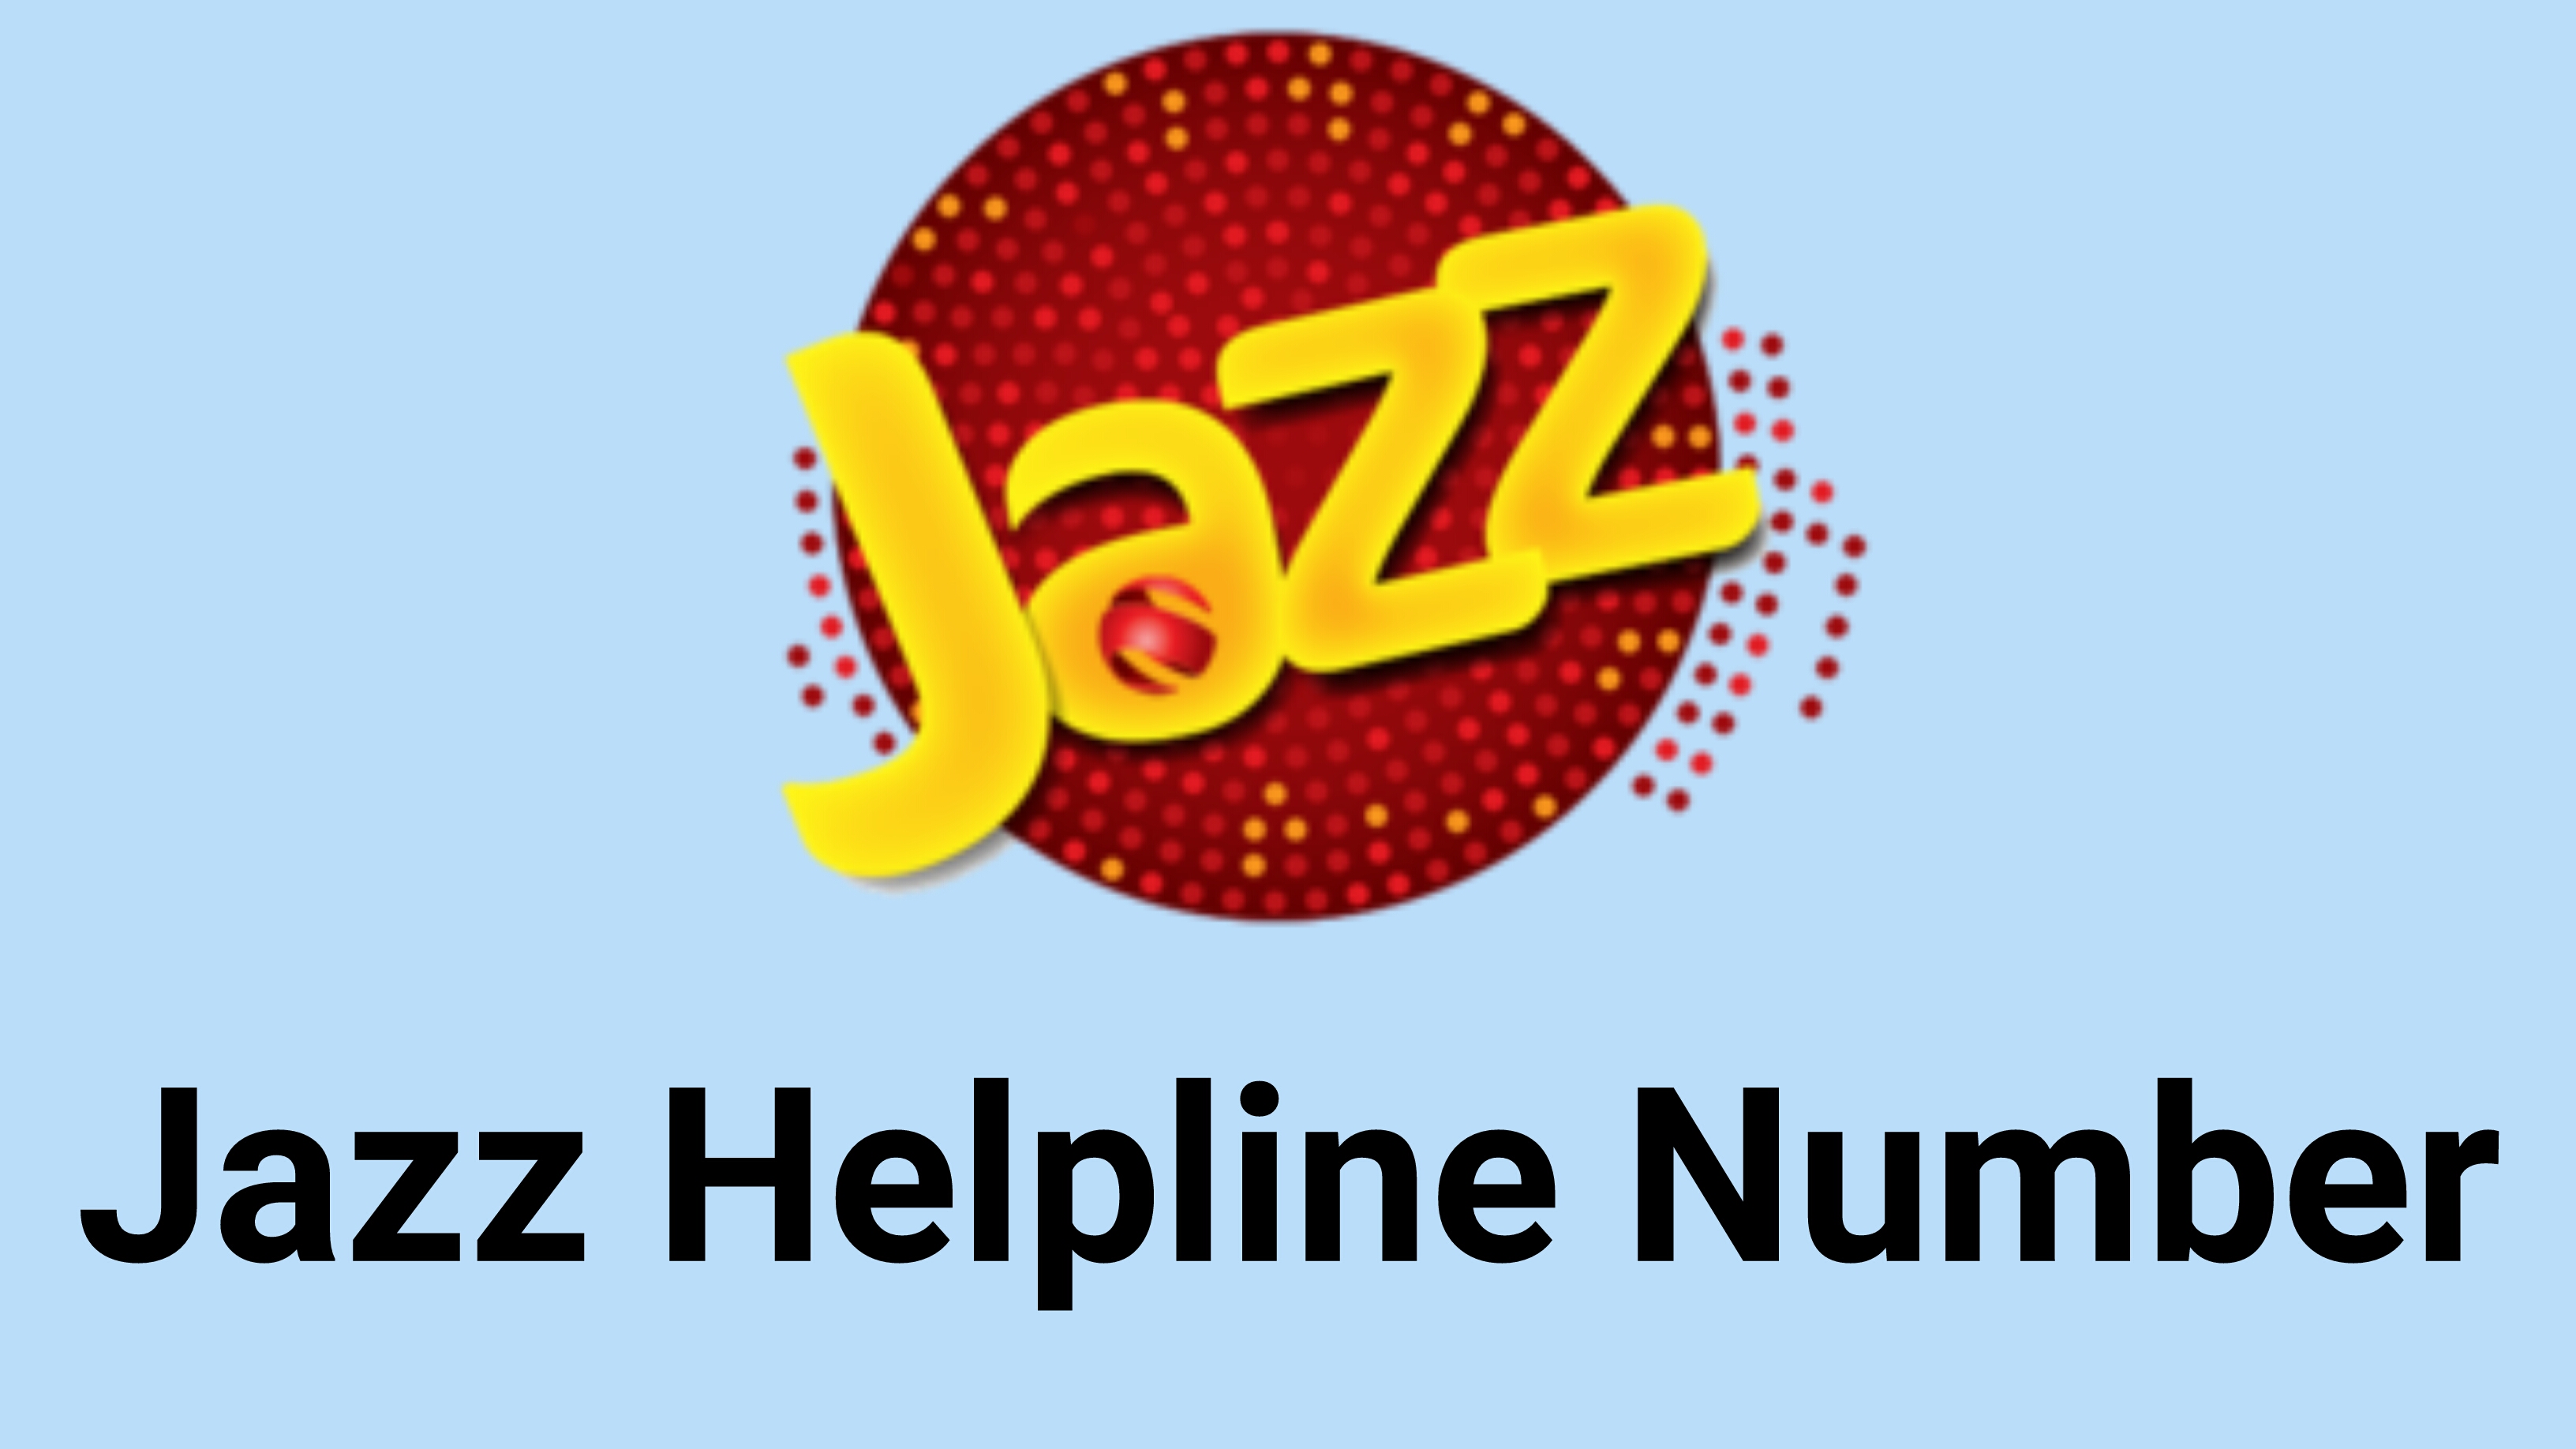 Helpline Number of Jazz